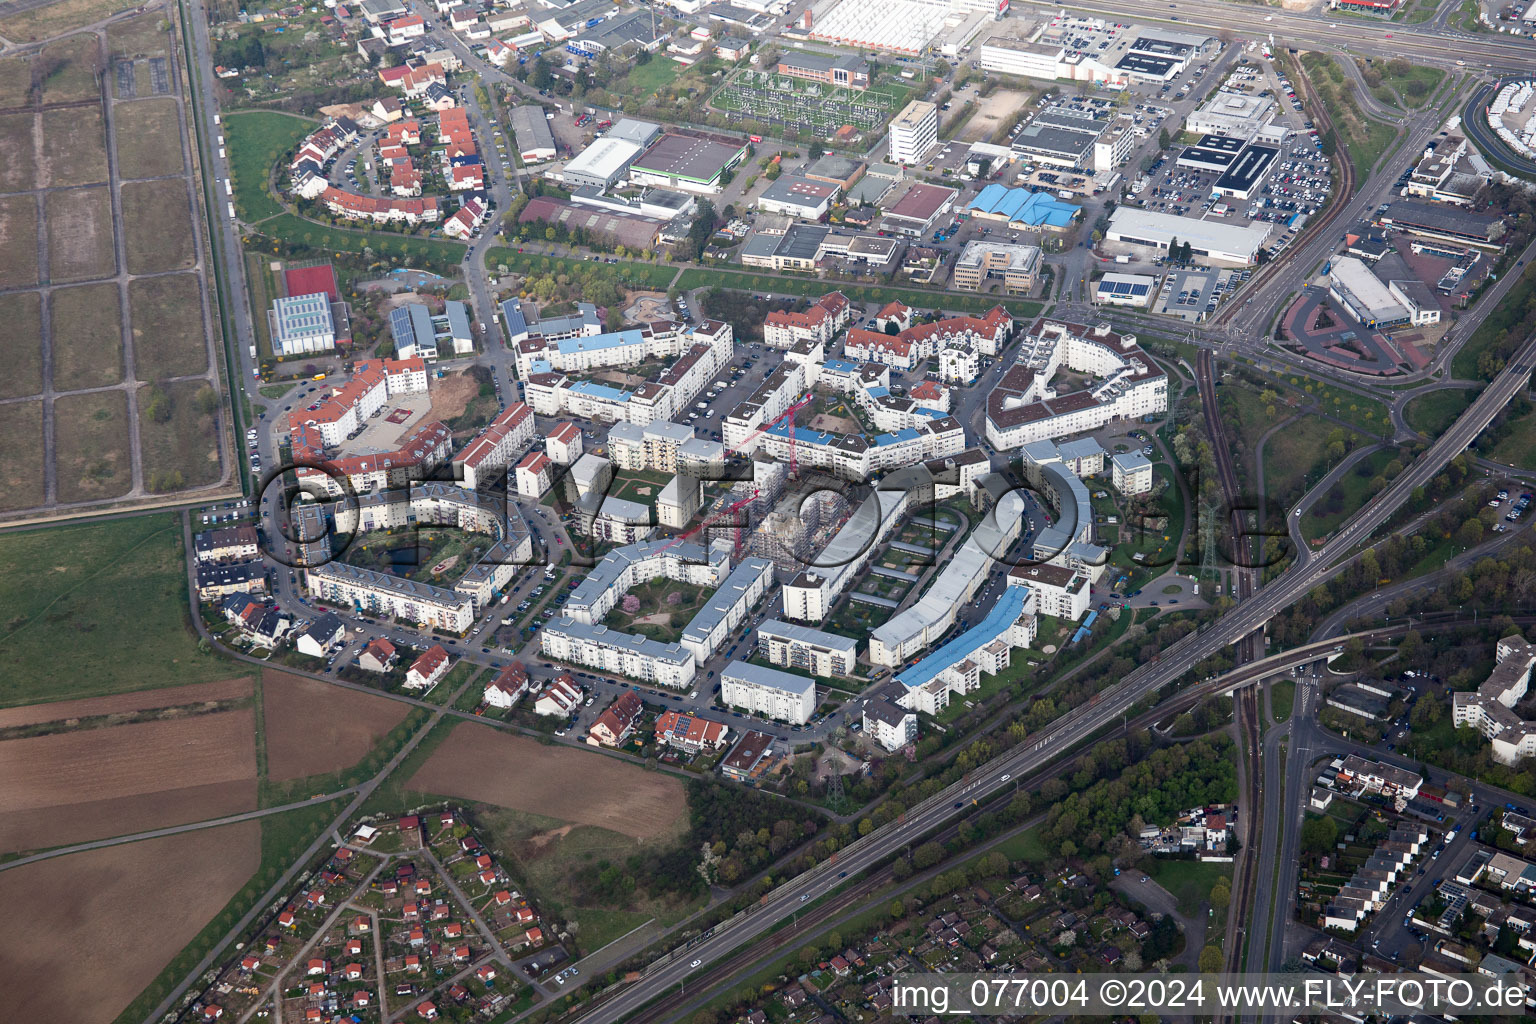 Vue aérienne de Bague Ida Dehmel à le quartier Käfertal in Mannheim dans le département Bade-Wurtemberg, Allemagne